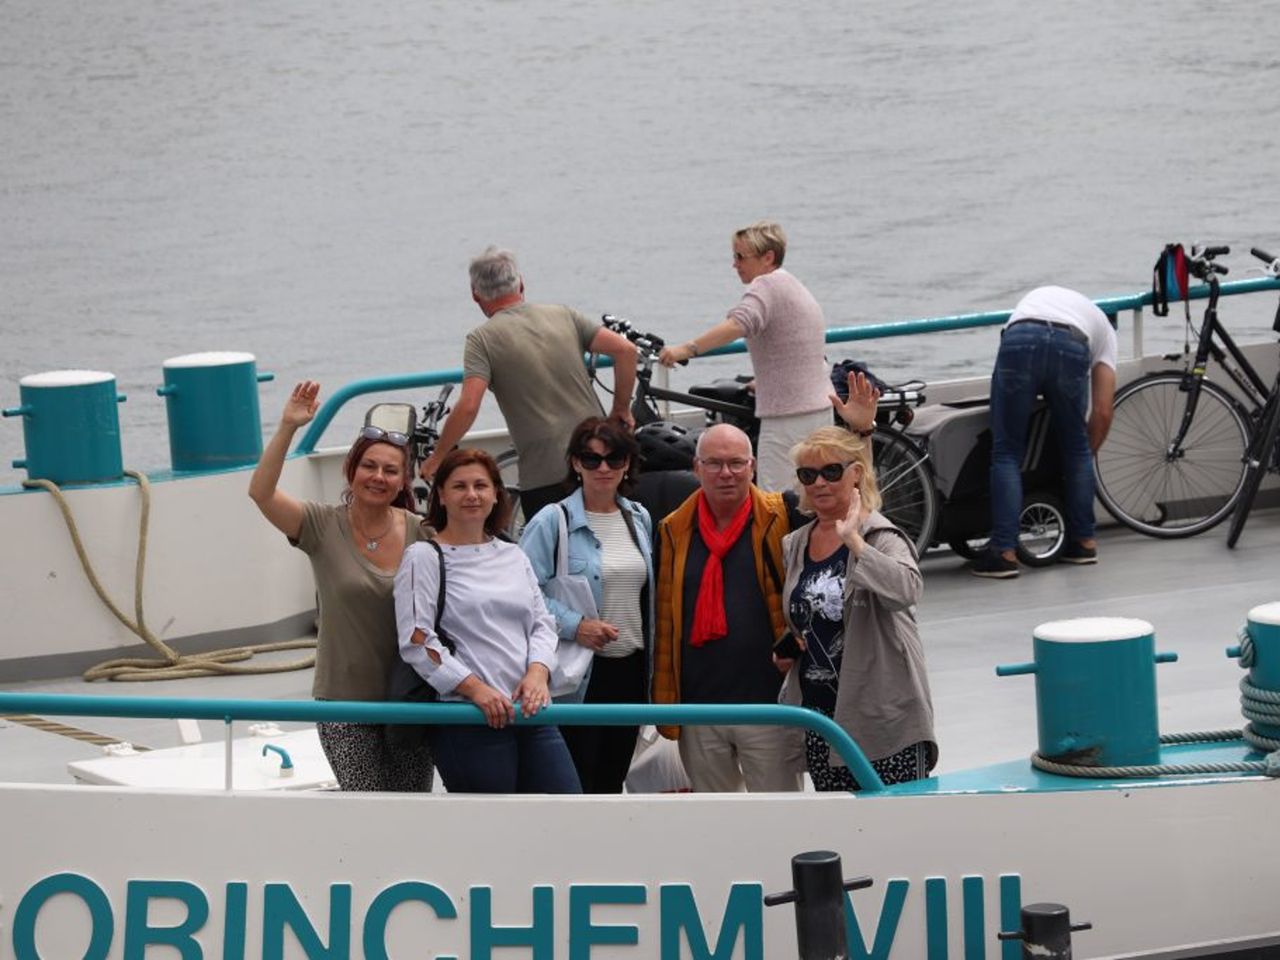 На лодках по трём историческим городам Нидерландов | Цена 600€, отзывы, описание экскурсии